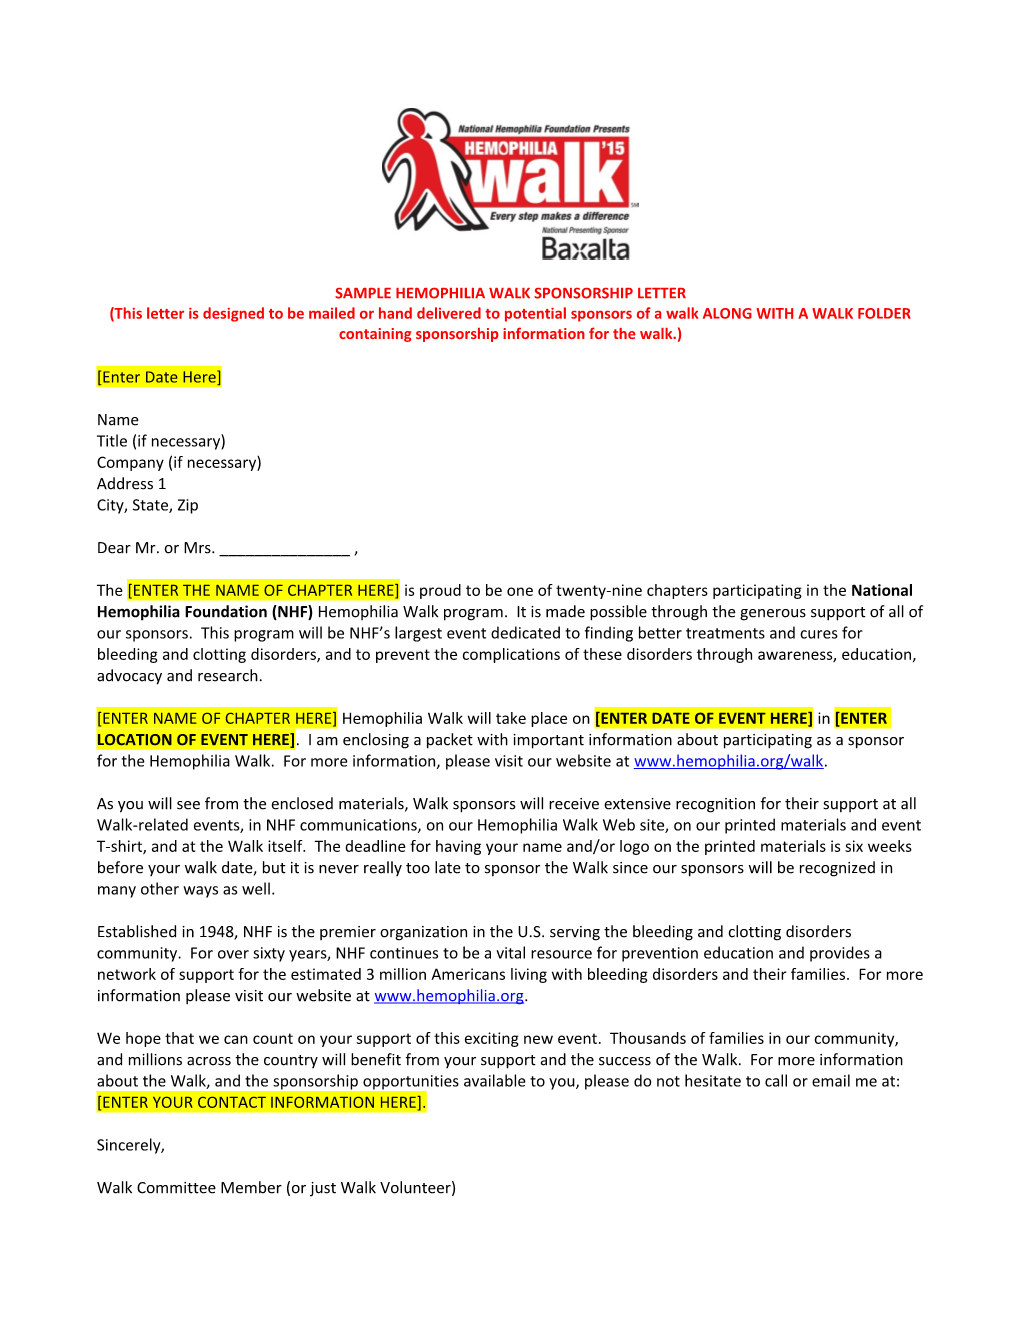 Sample Hemophilia Walk Sponsorship Letter